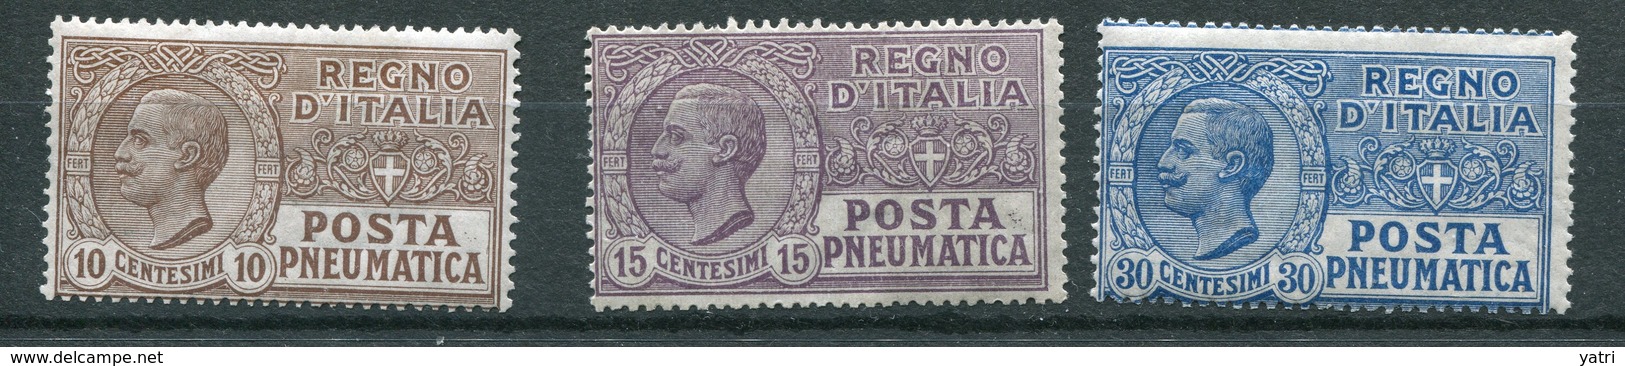 Regno D'Italia -  Posta Pneumatica 1913 - N. 1 - 2 - 3  ** MNH - Pneumatic Mail